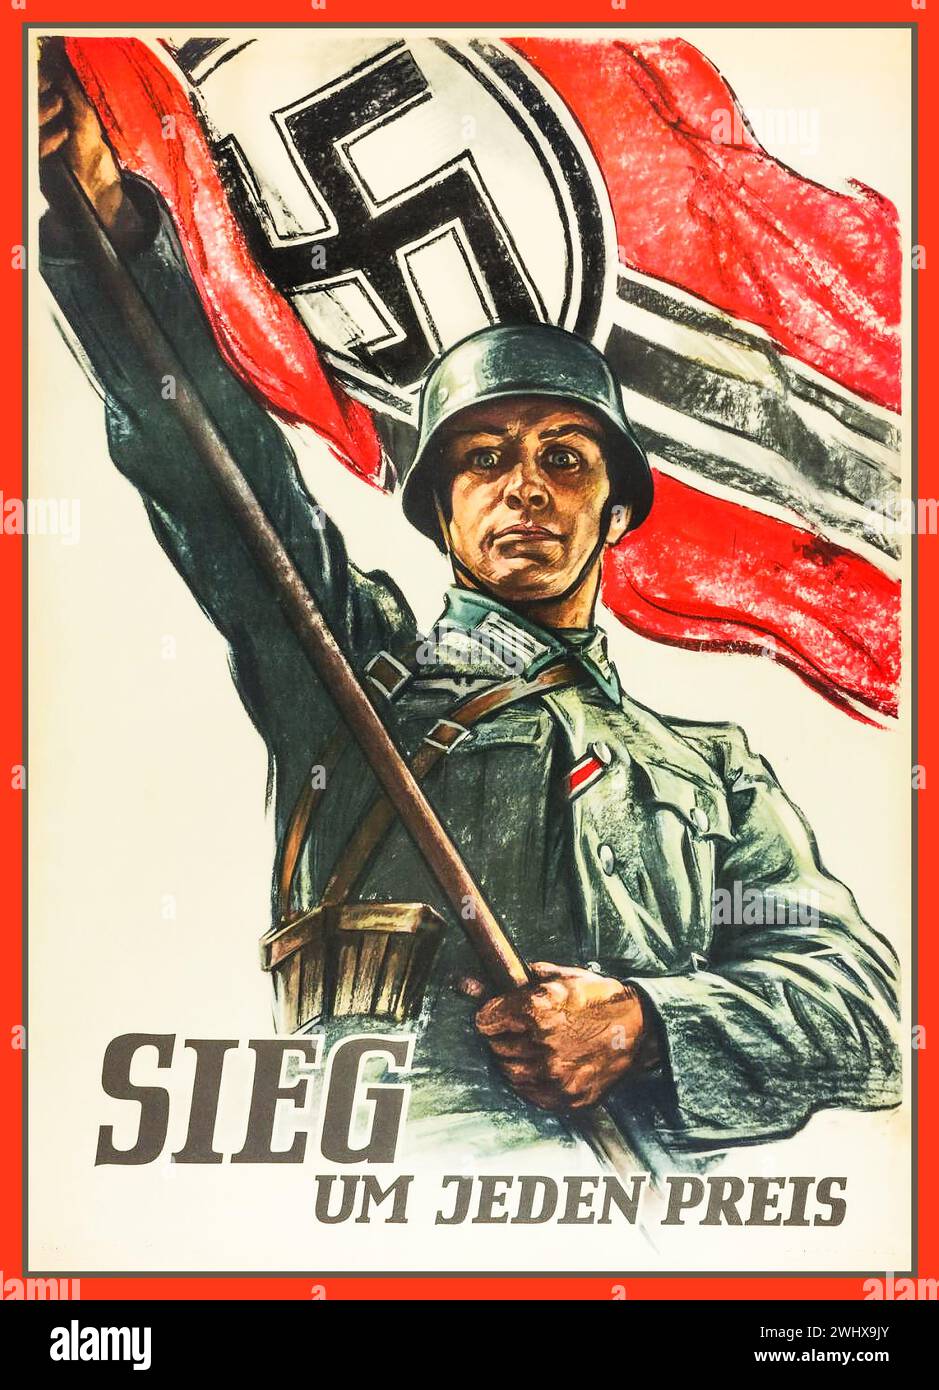 Seconda guerra mondiale, soldato dell'esercito della Wehrmacht con una grande bandiera svastica con il titolo di propaganda "VITTORIA a tutti i costi", seconda guerra mondiale, Germania nazista Foto Stock